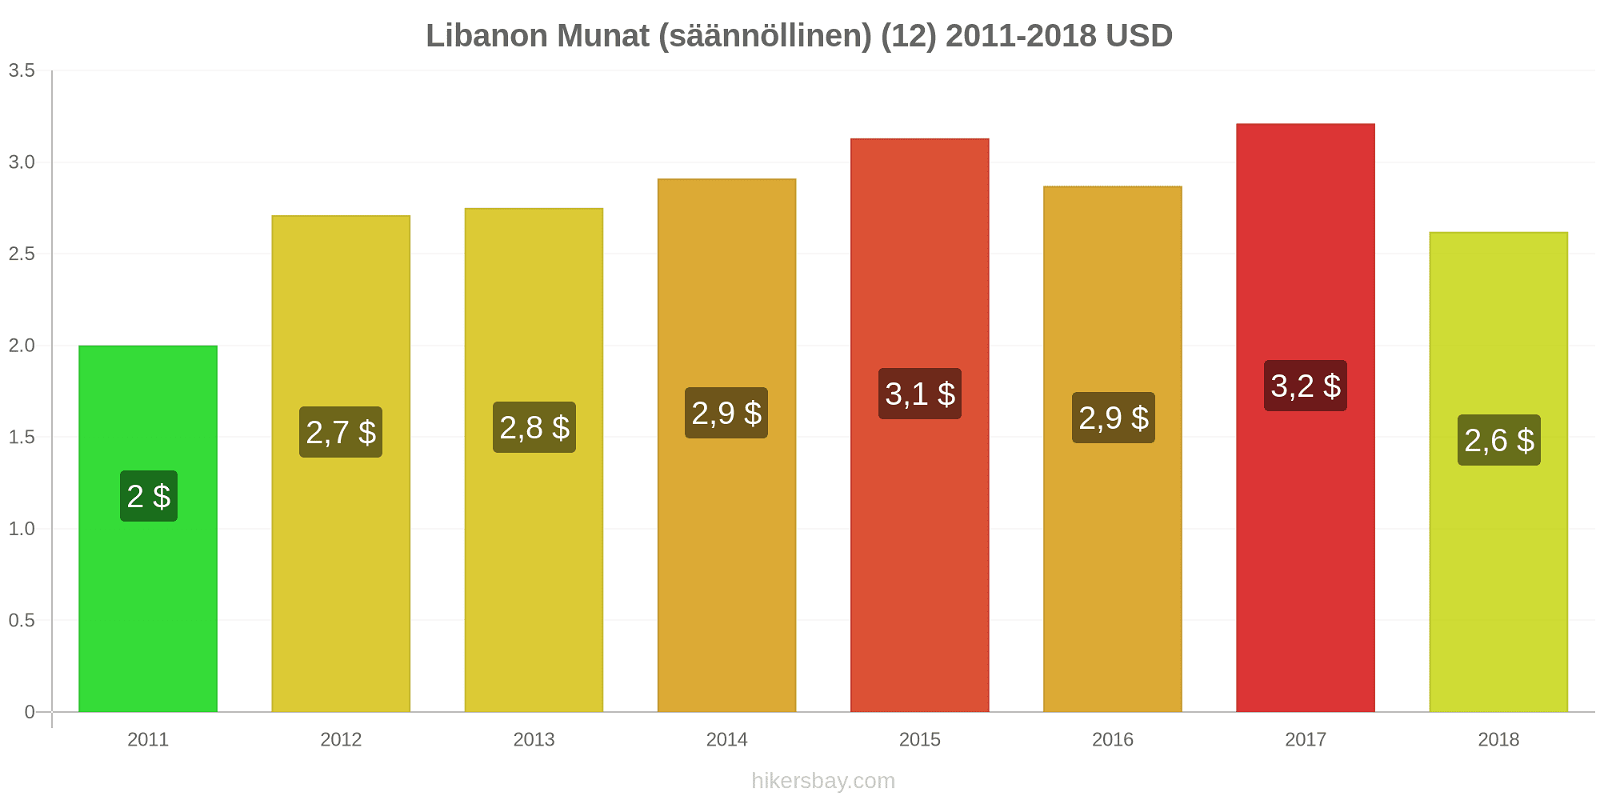 Libanon hintojen muutokset Munat (tavalliset) (12) hikersbay.com